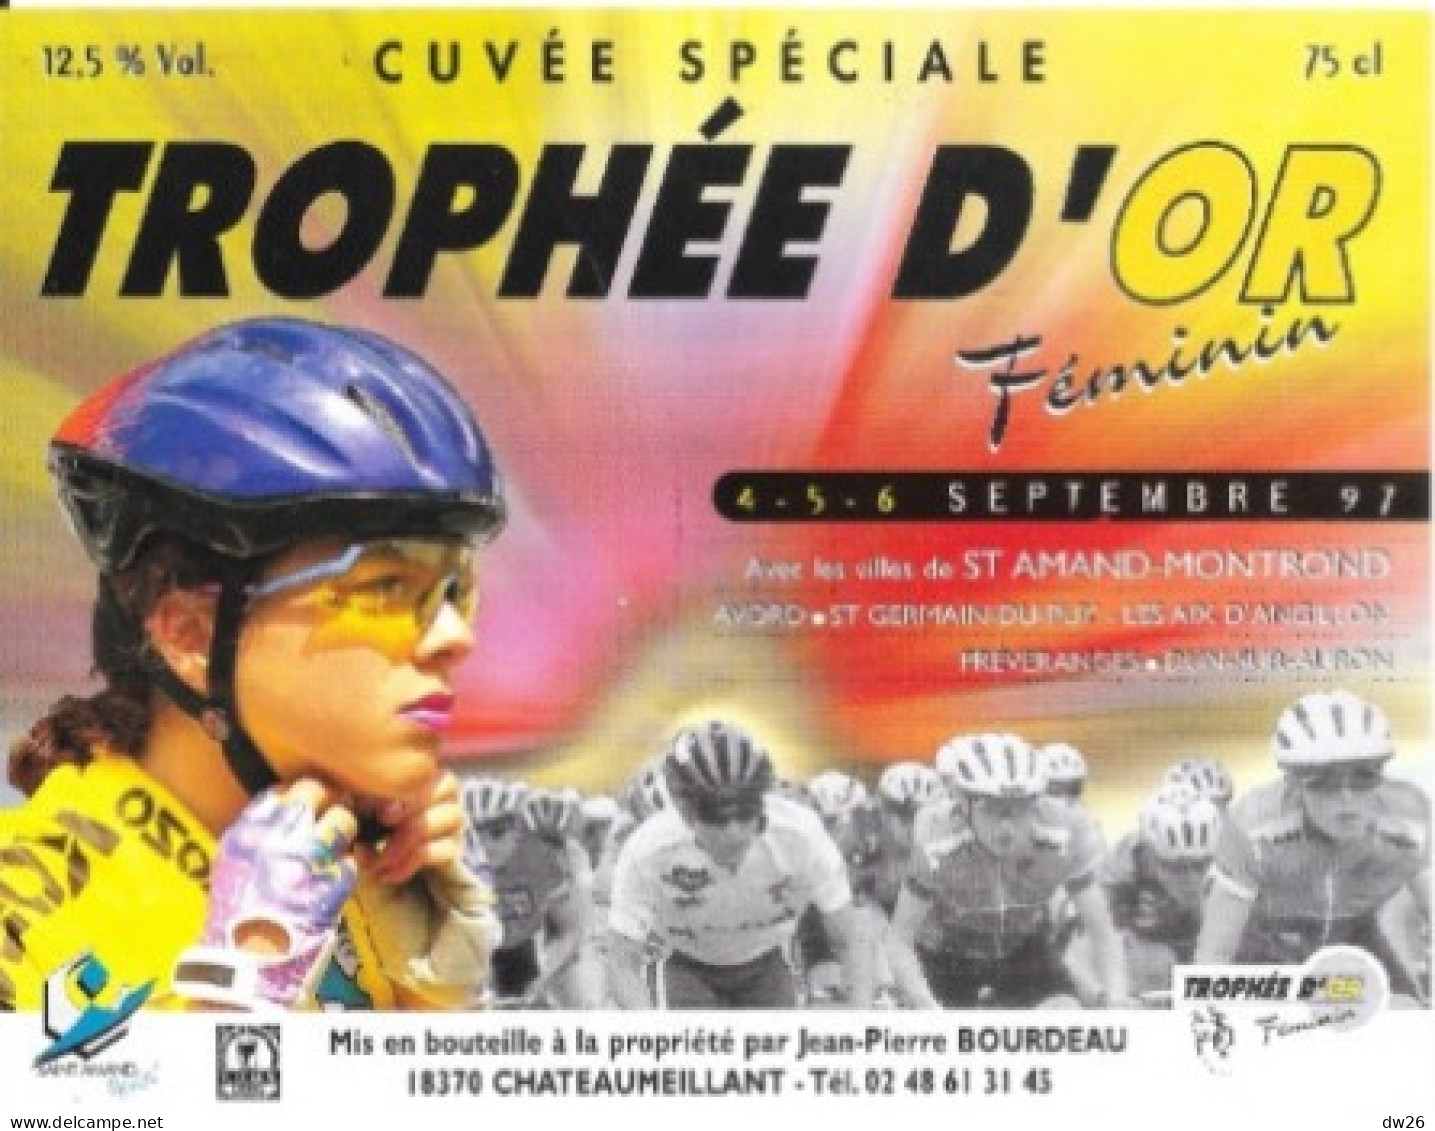 Etiquette VDQS Chateaumeillant, Cuvée Spéciale Trophée D'Or Féminin Cyclisme - Léontien Van Moorsel 1997 - Cycling